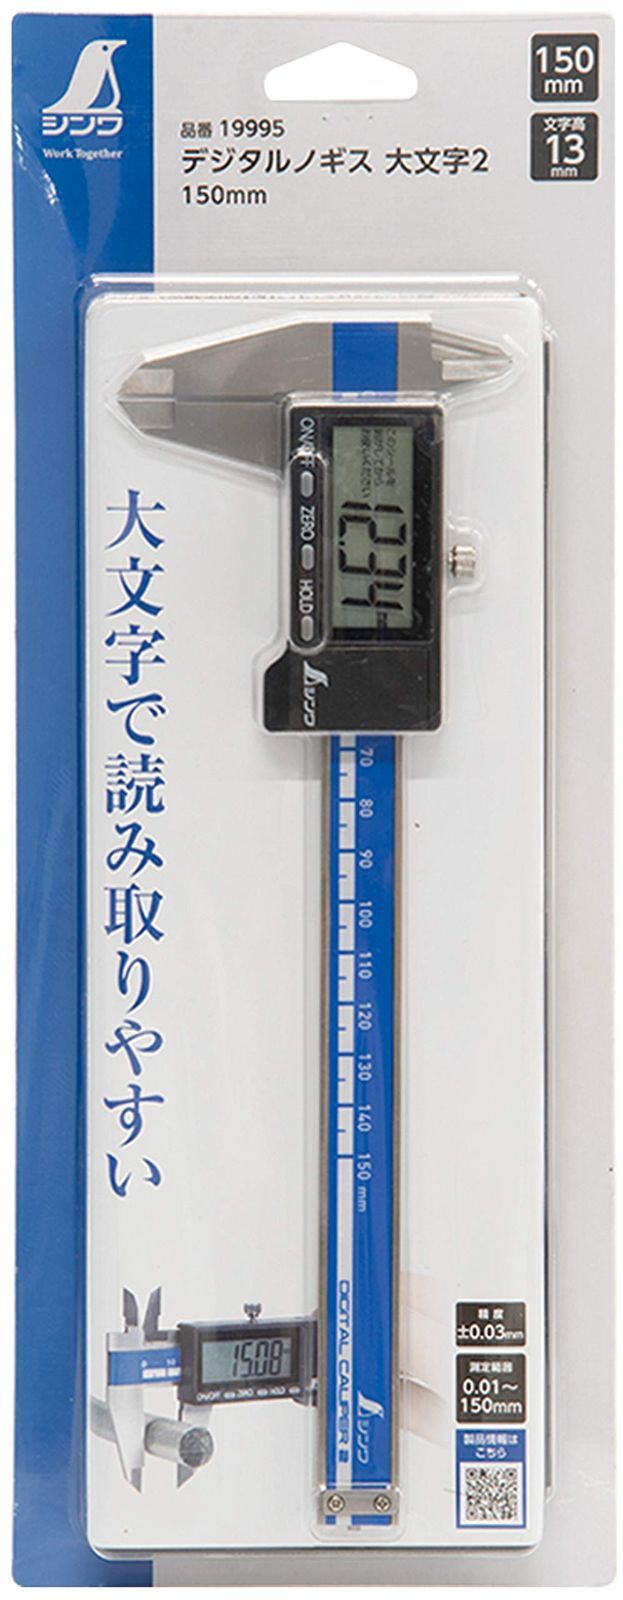 シンワ測定(Shinwa Sokutei) デジタルノギス 大文字2 150mm データ転送